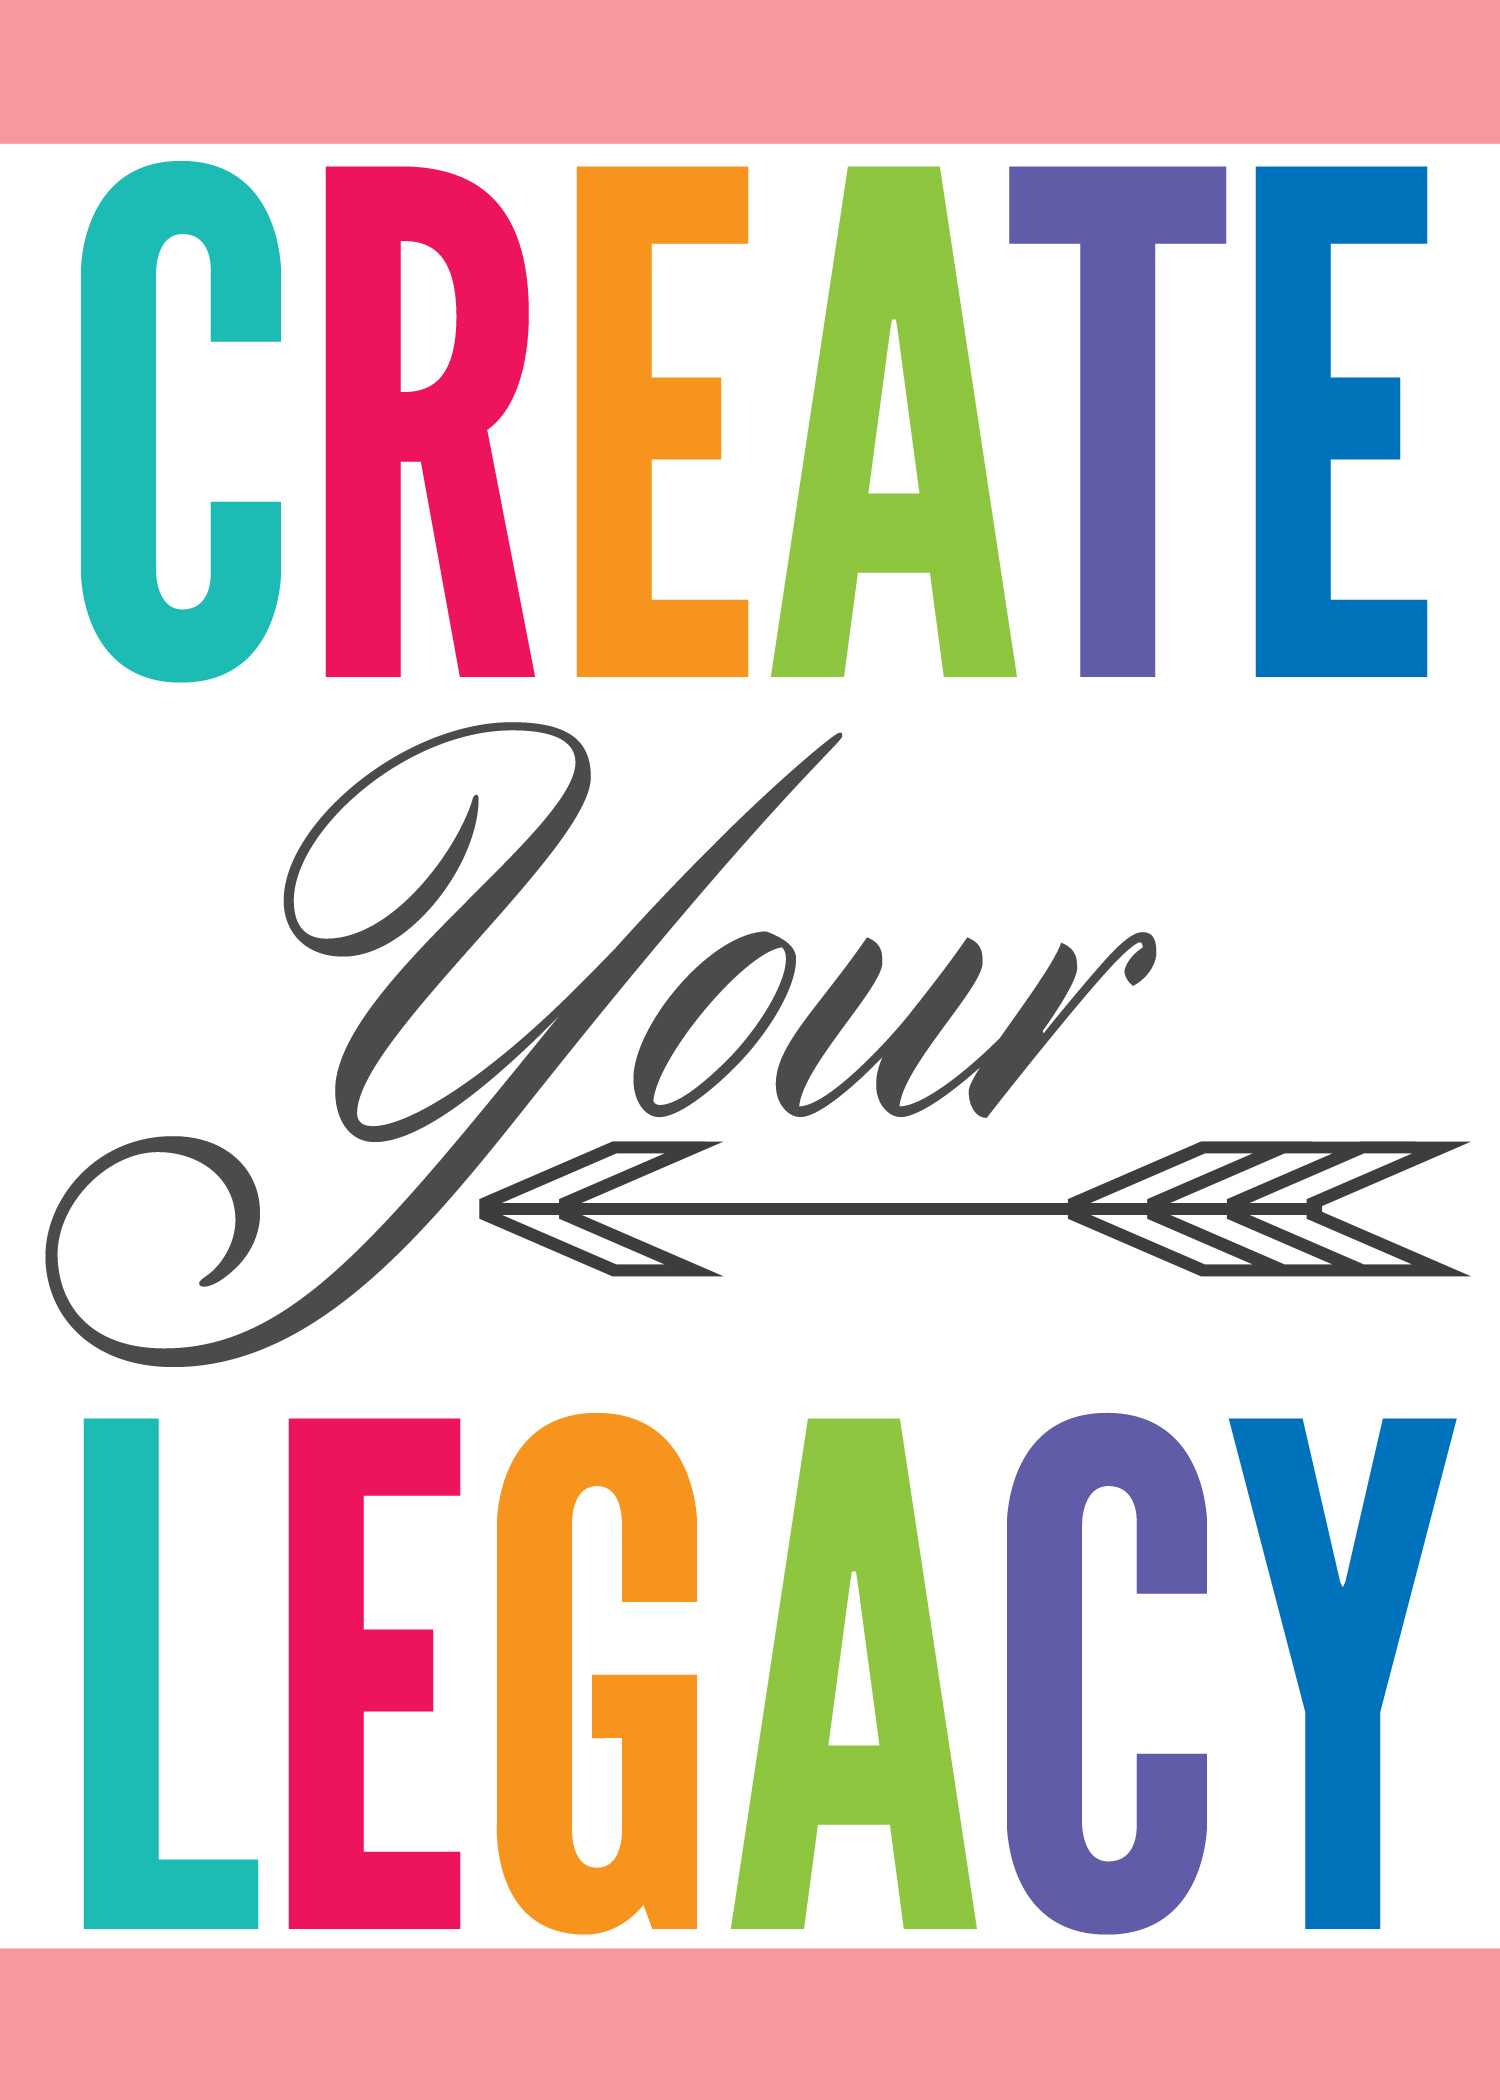 https://www.positivelysplendid.com/wp-content/uploads/2014/04/Create-Your-Legacy.jpg